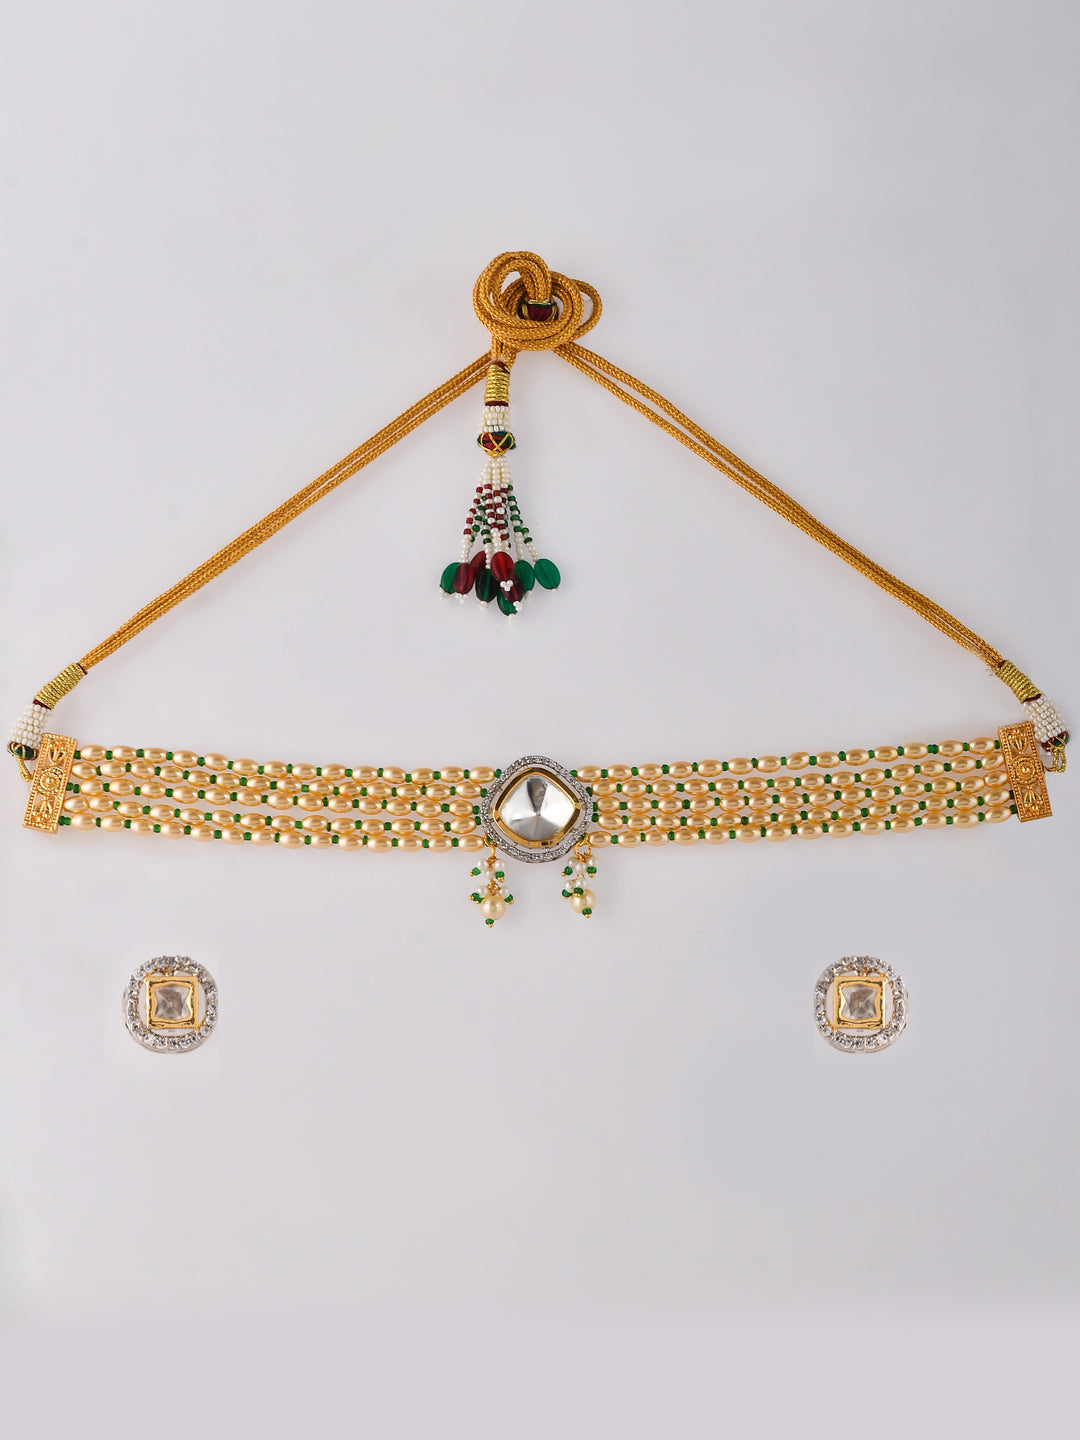 A mesmerizing Polki jewelry set